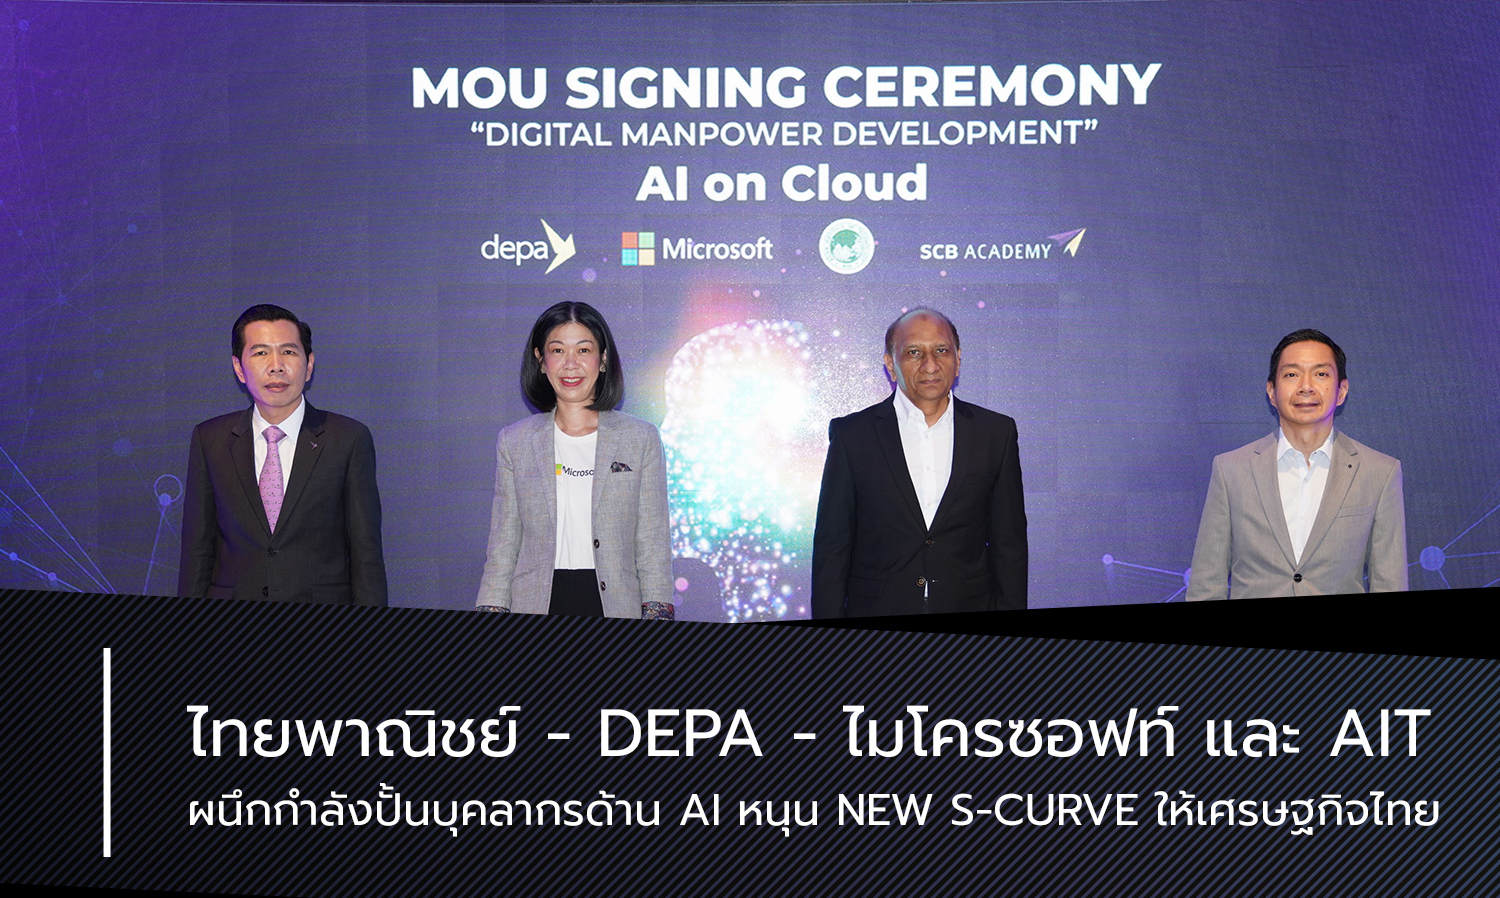 ไทยพาณิชย์ - depa - ไมโครซอฟท์ และ AIT ผนึกกำลังปั้นบุคลากรด้าน AI หนุน New S-Curve ให้เศรษฐกิจไทย